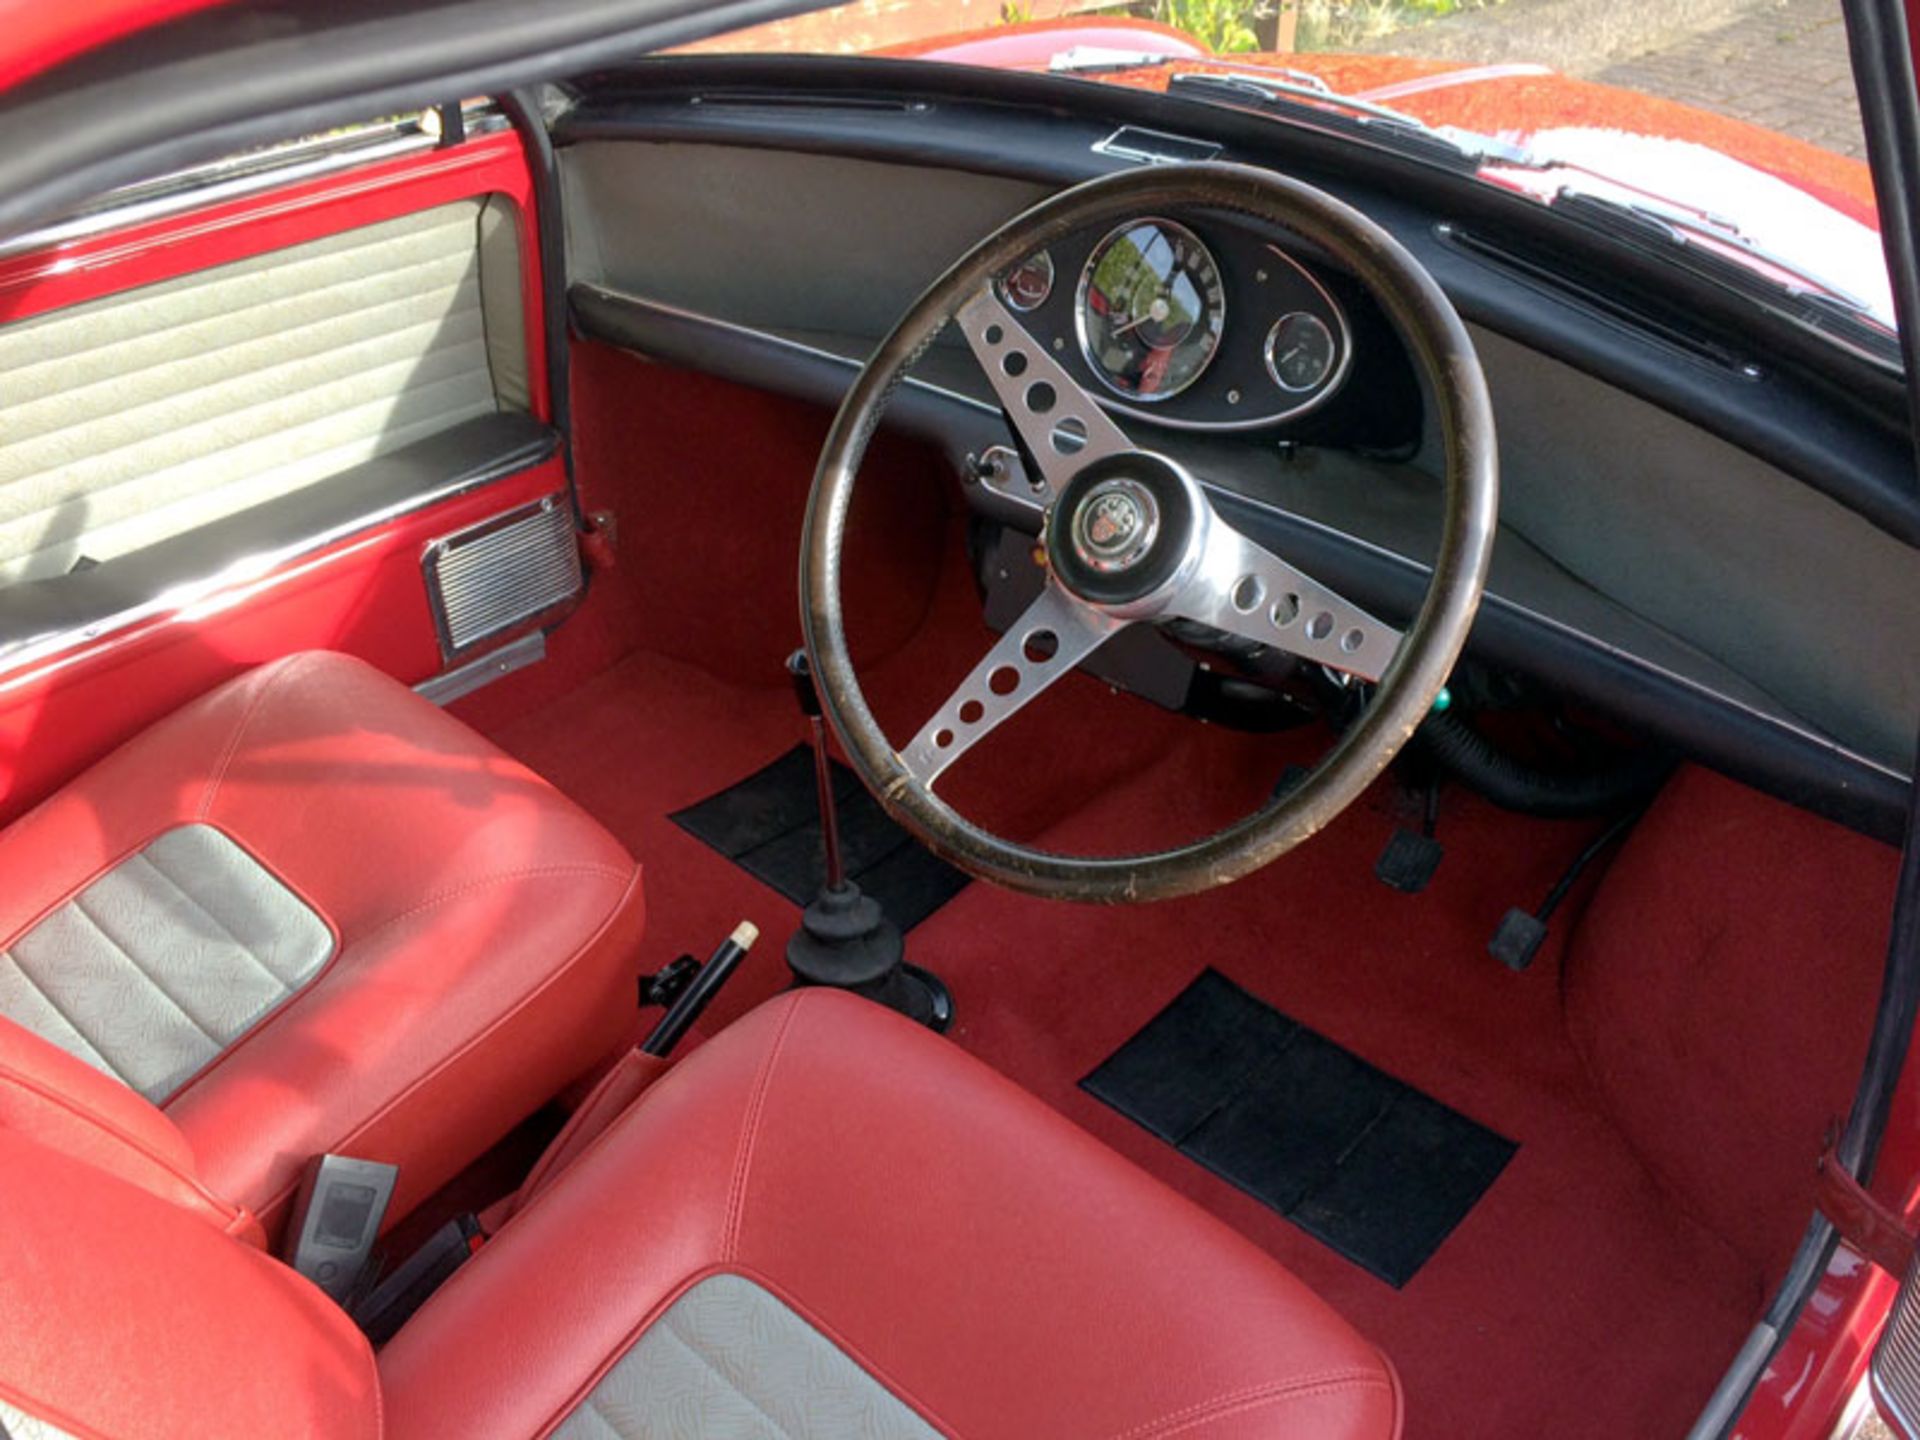 1966 Austin Mini Cooper S 1275 - Image 5 of 8